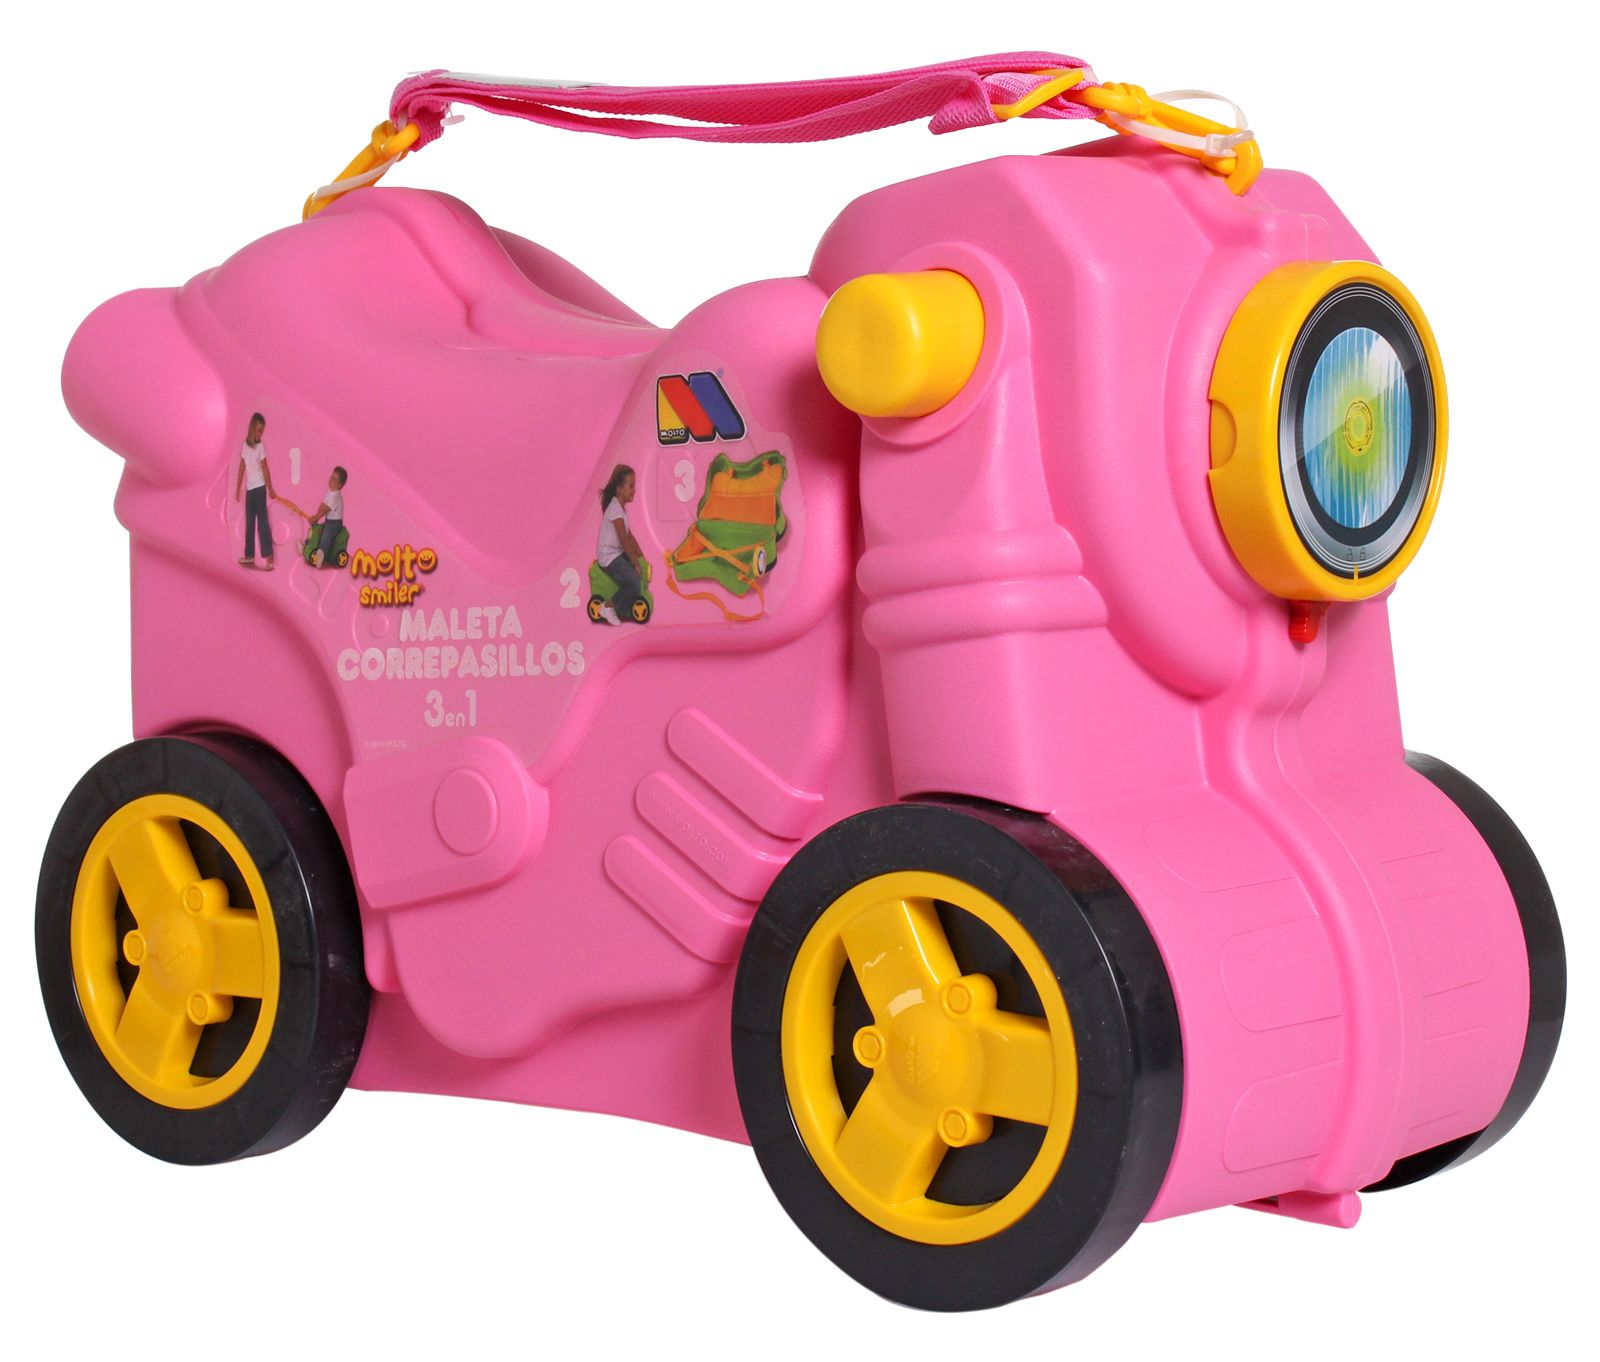 Molto - Bike Jumbo Smiler Pink Suitcase